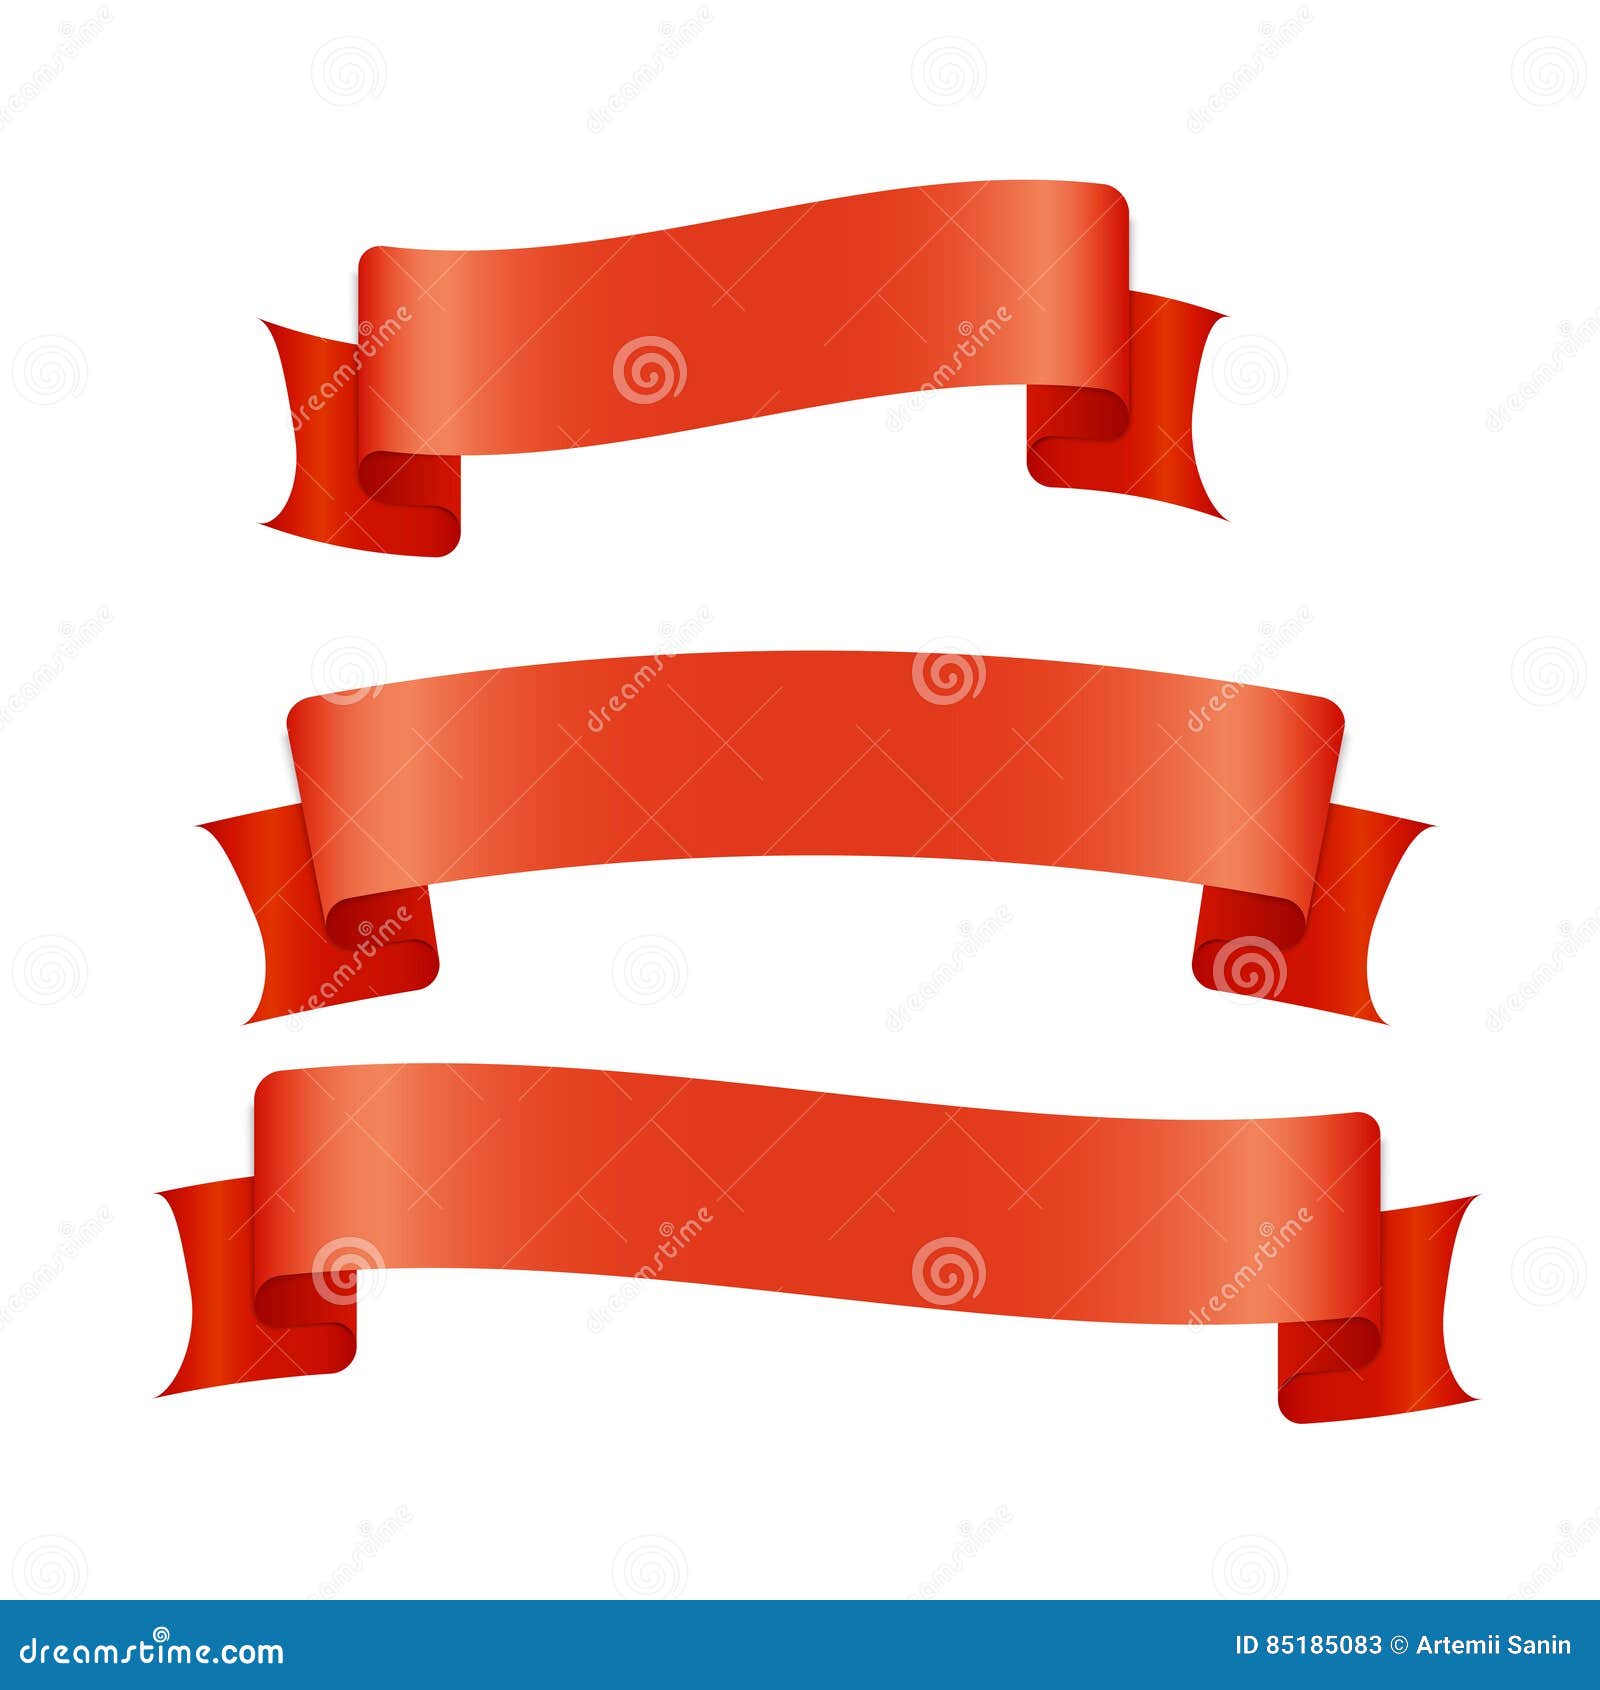 Premium Vector  Red ribbon design